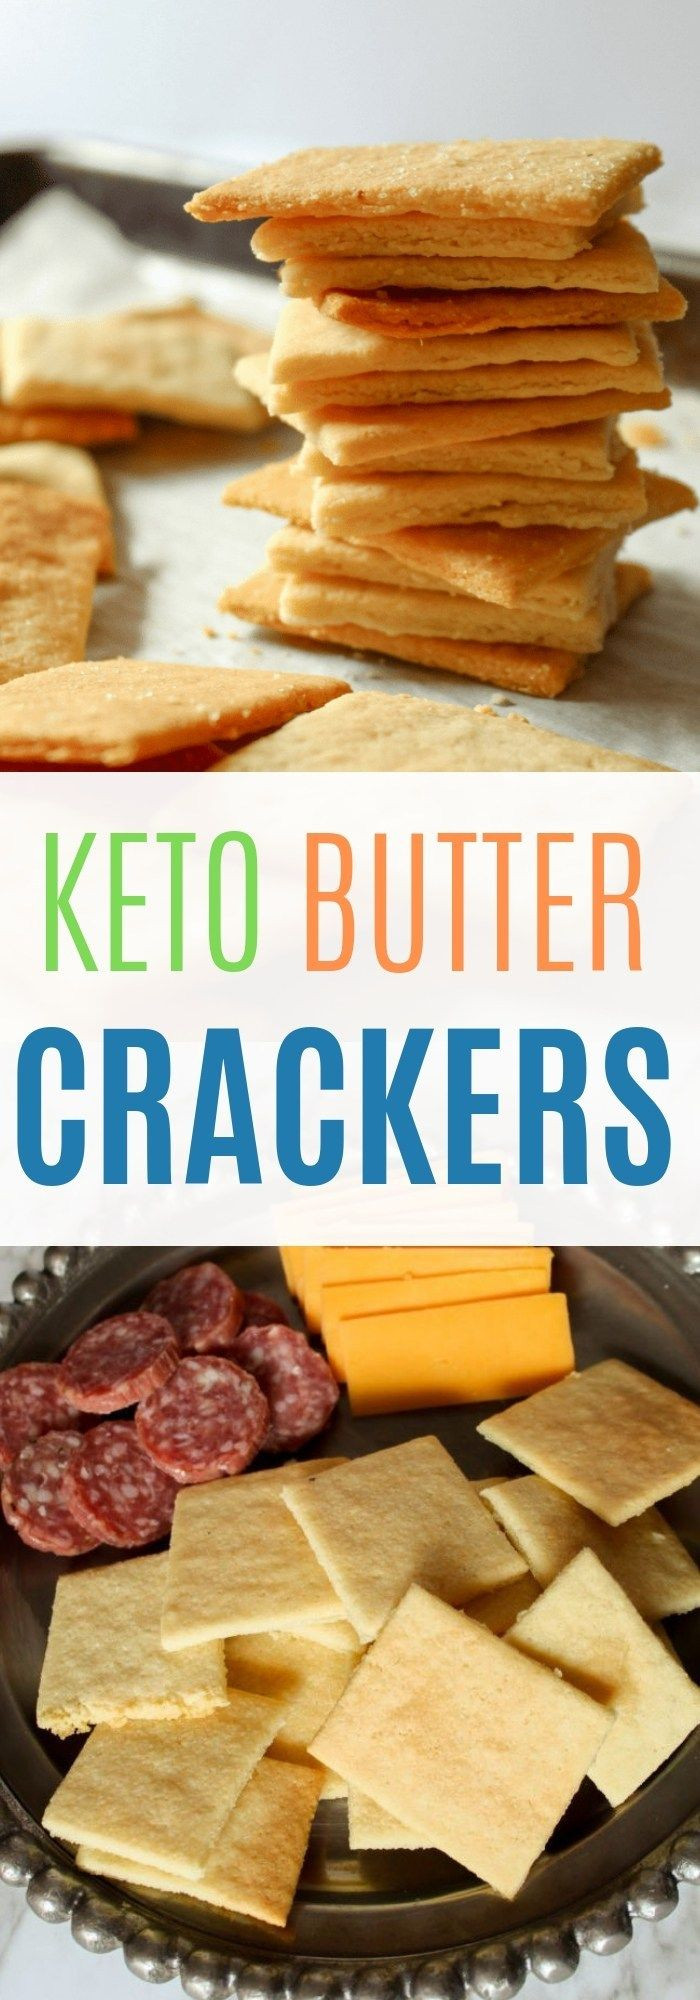 Keto Butter Crackers
 KETO BUTTER CRACKERS